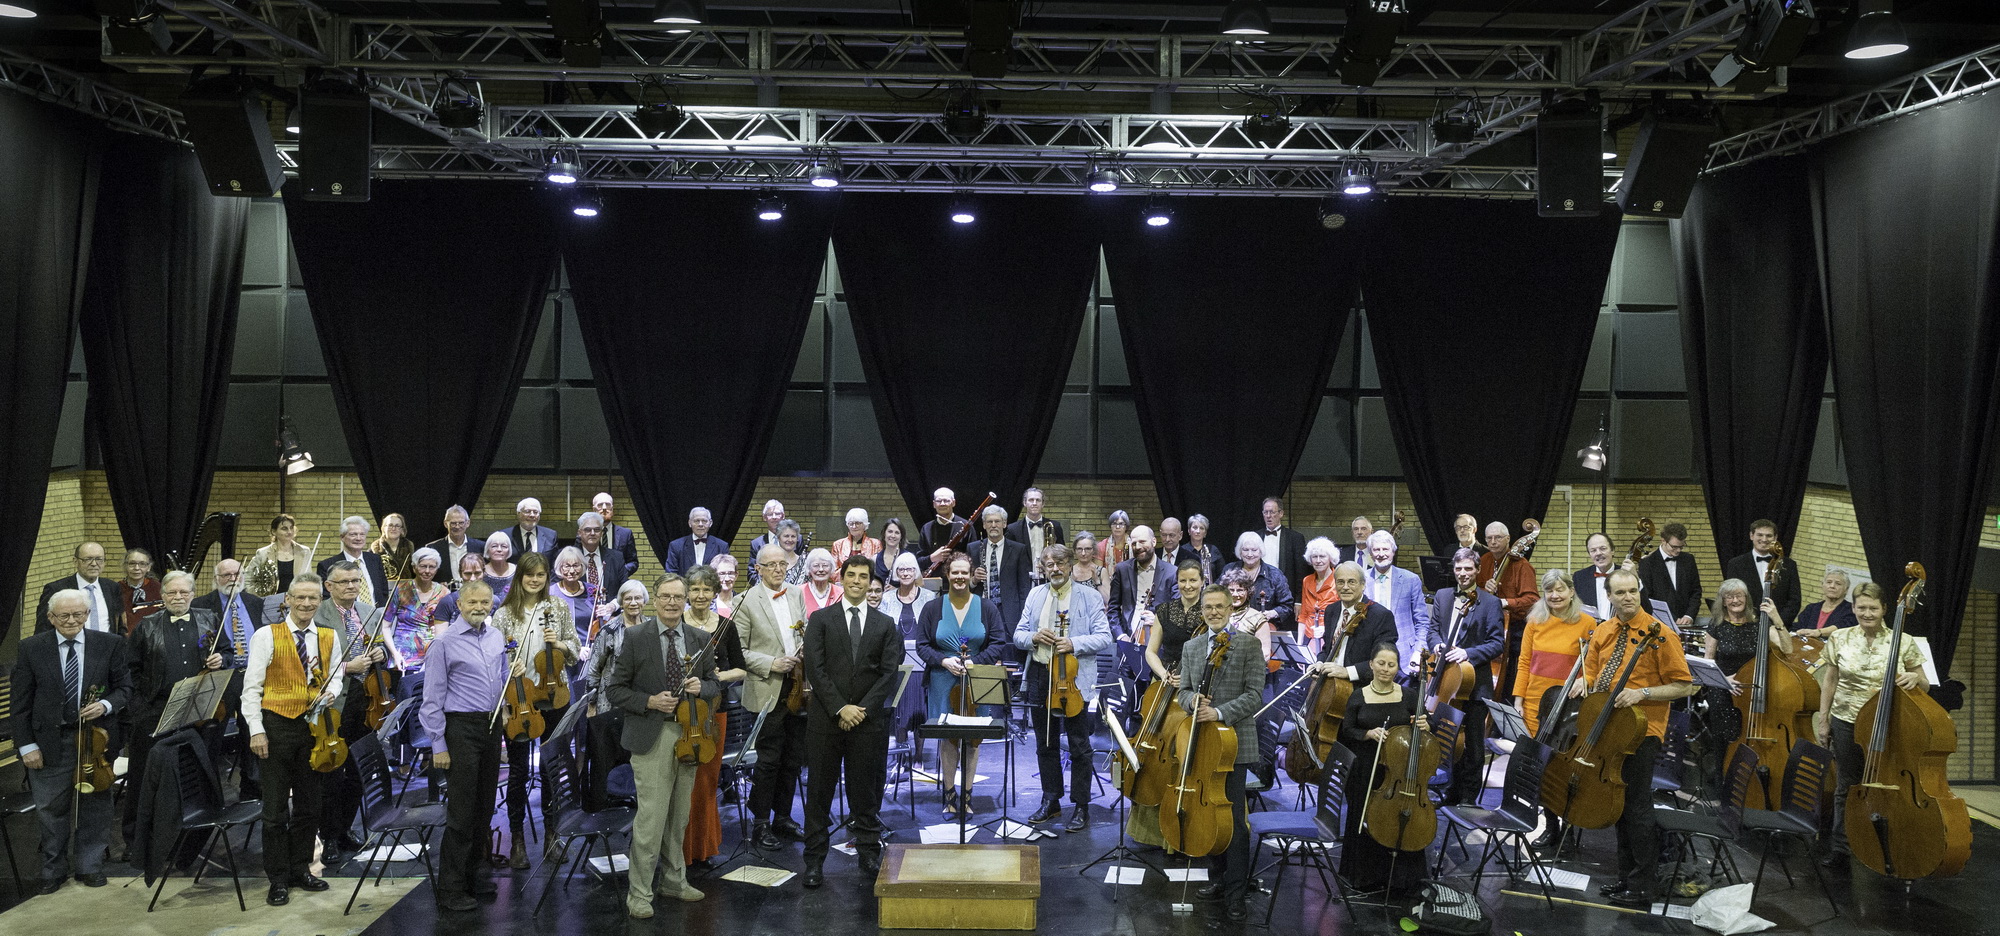 Amatørsymfonikerne under en koncert i Rudersdal 13.01.2016. Dirigent Vincenzo Milletari